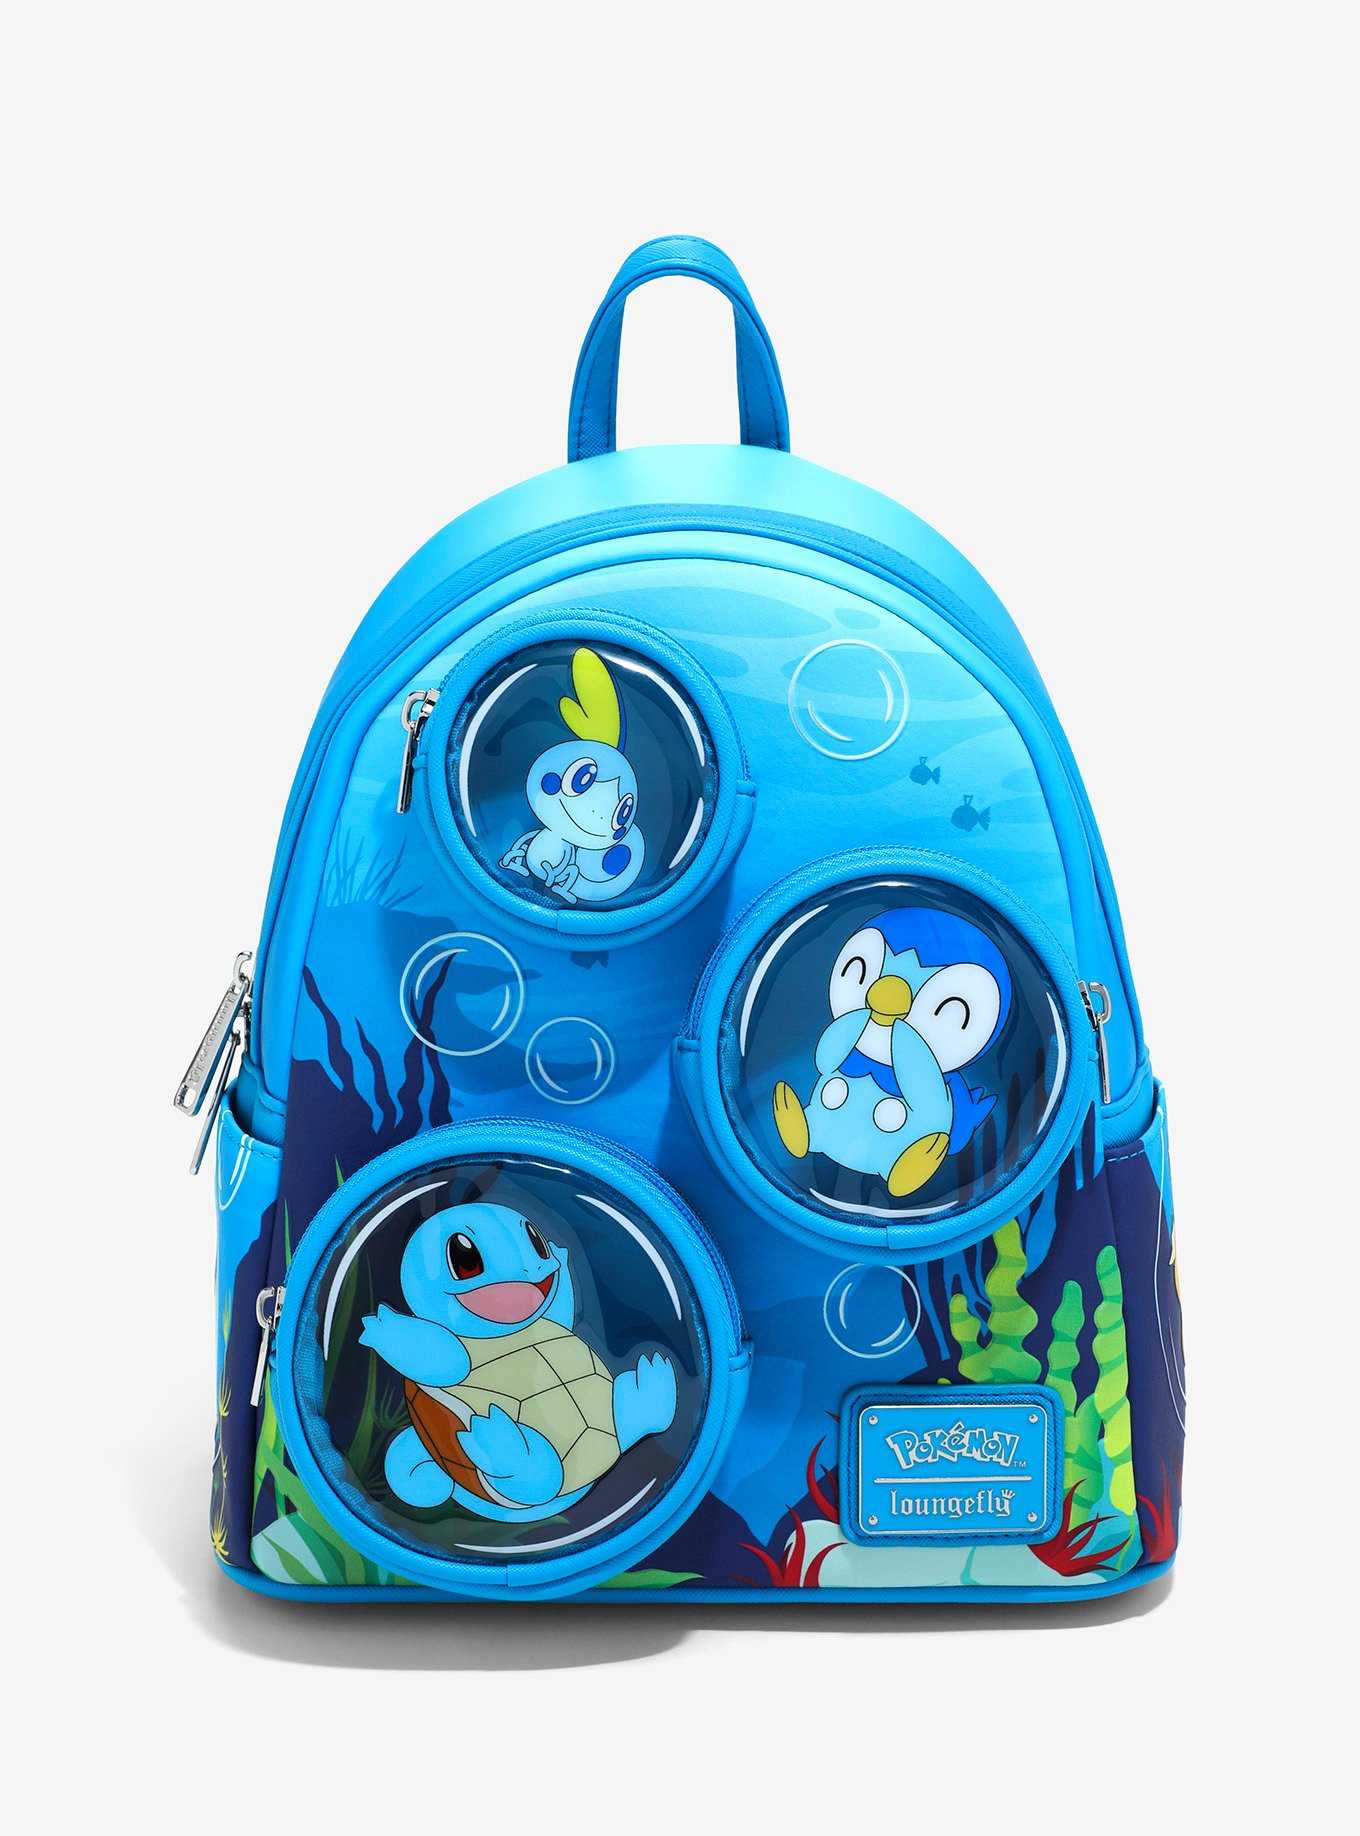 Harry Inspired Vinyl Sticker Fan Drawing Art Waterproof - Gift girls boys  kids child teens laptop water bottle lunchbox backpack school